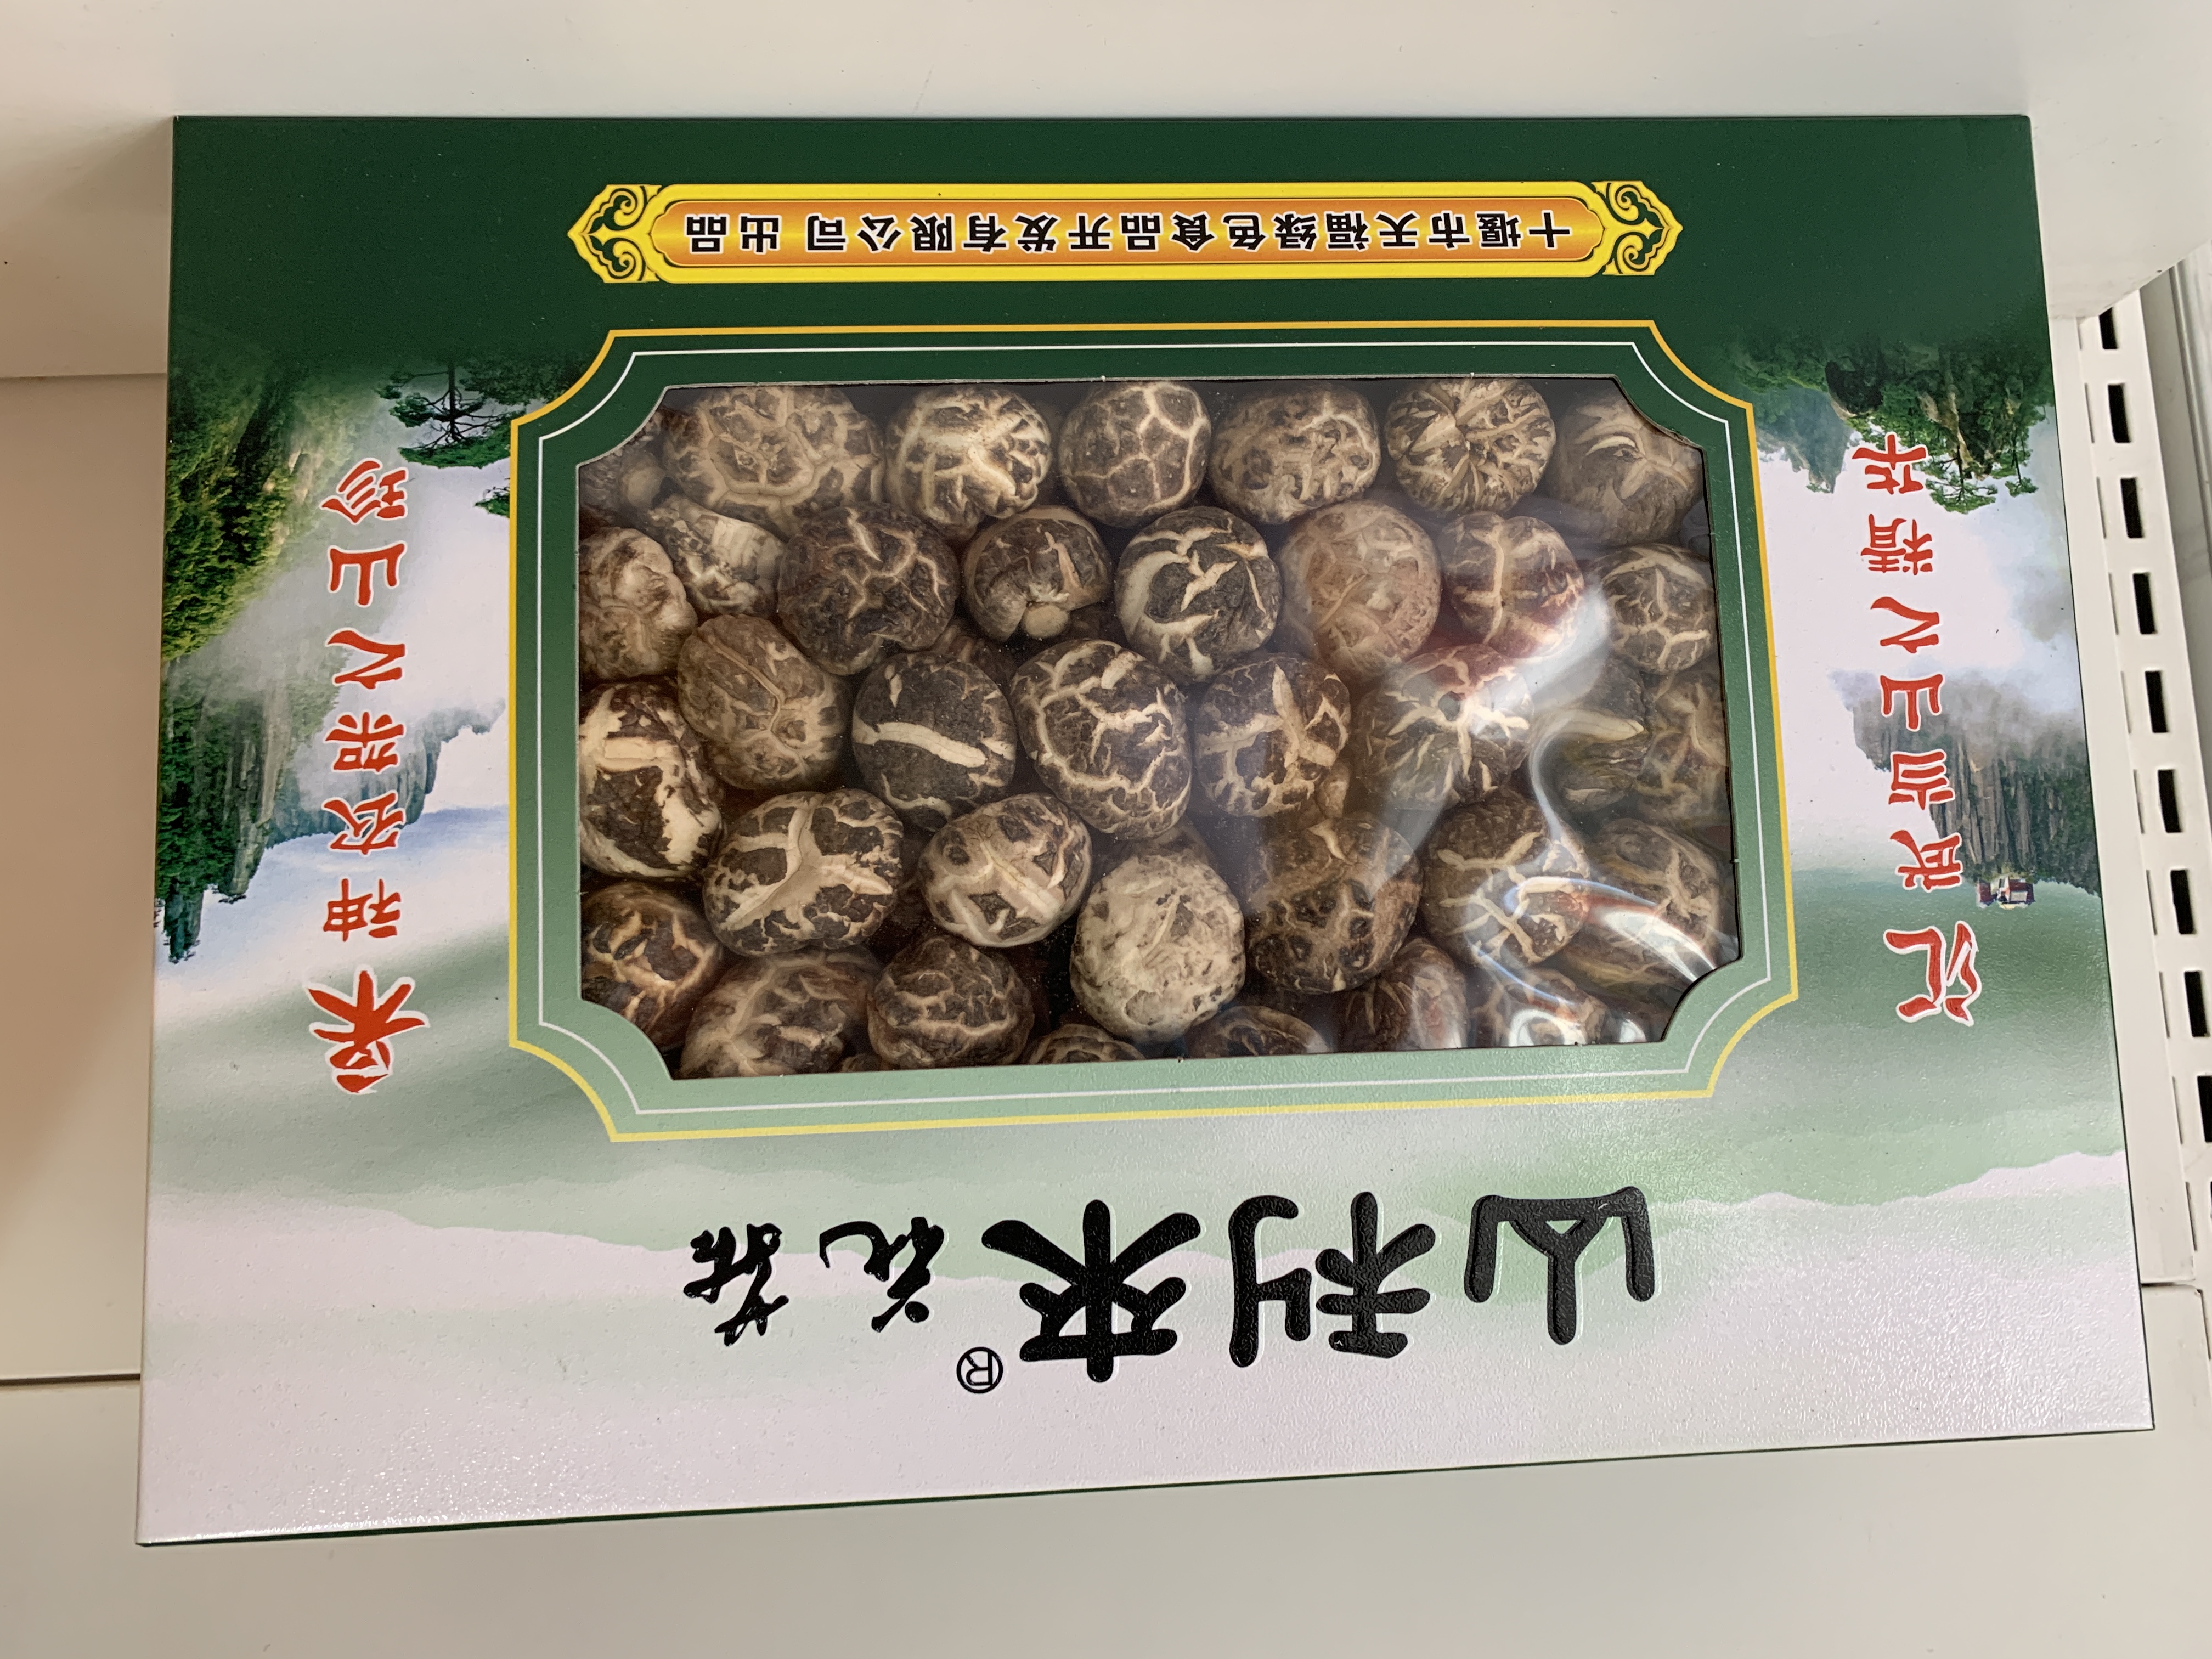 【山利来】绿盒花菇 300g礼盒